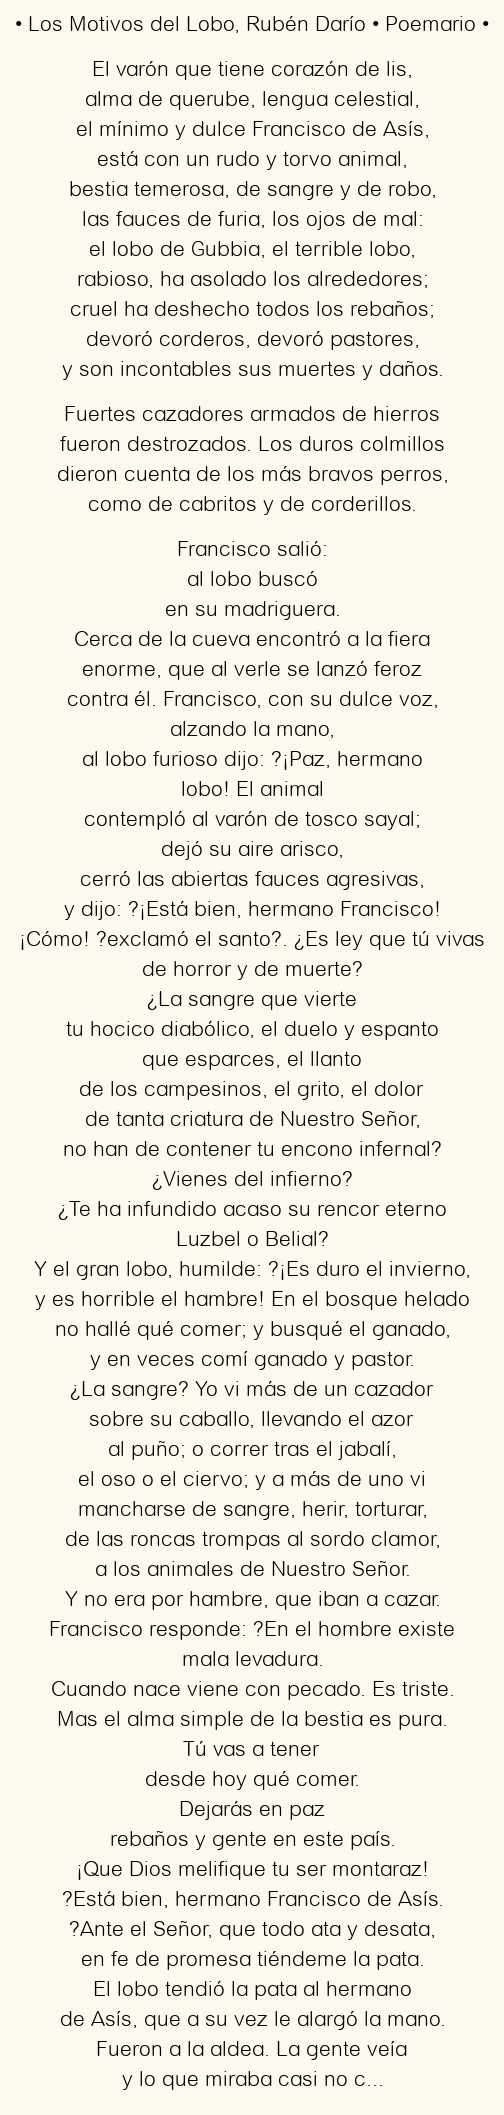 Imagen con el poema Los motivos del lobo, por Rubén Darío